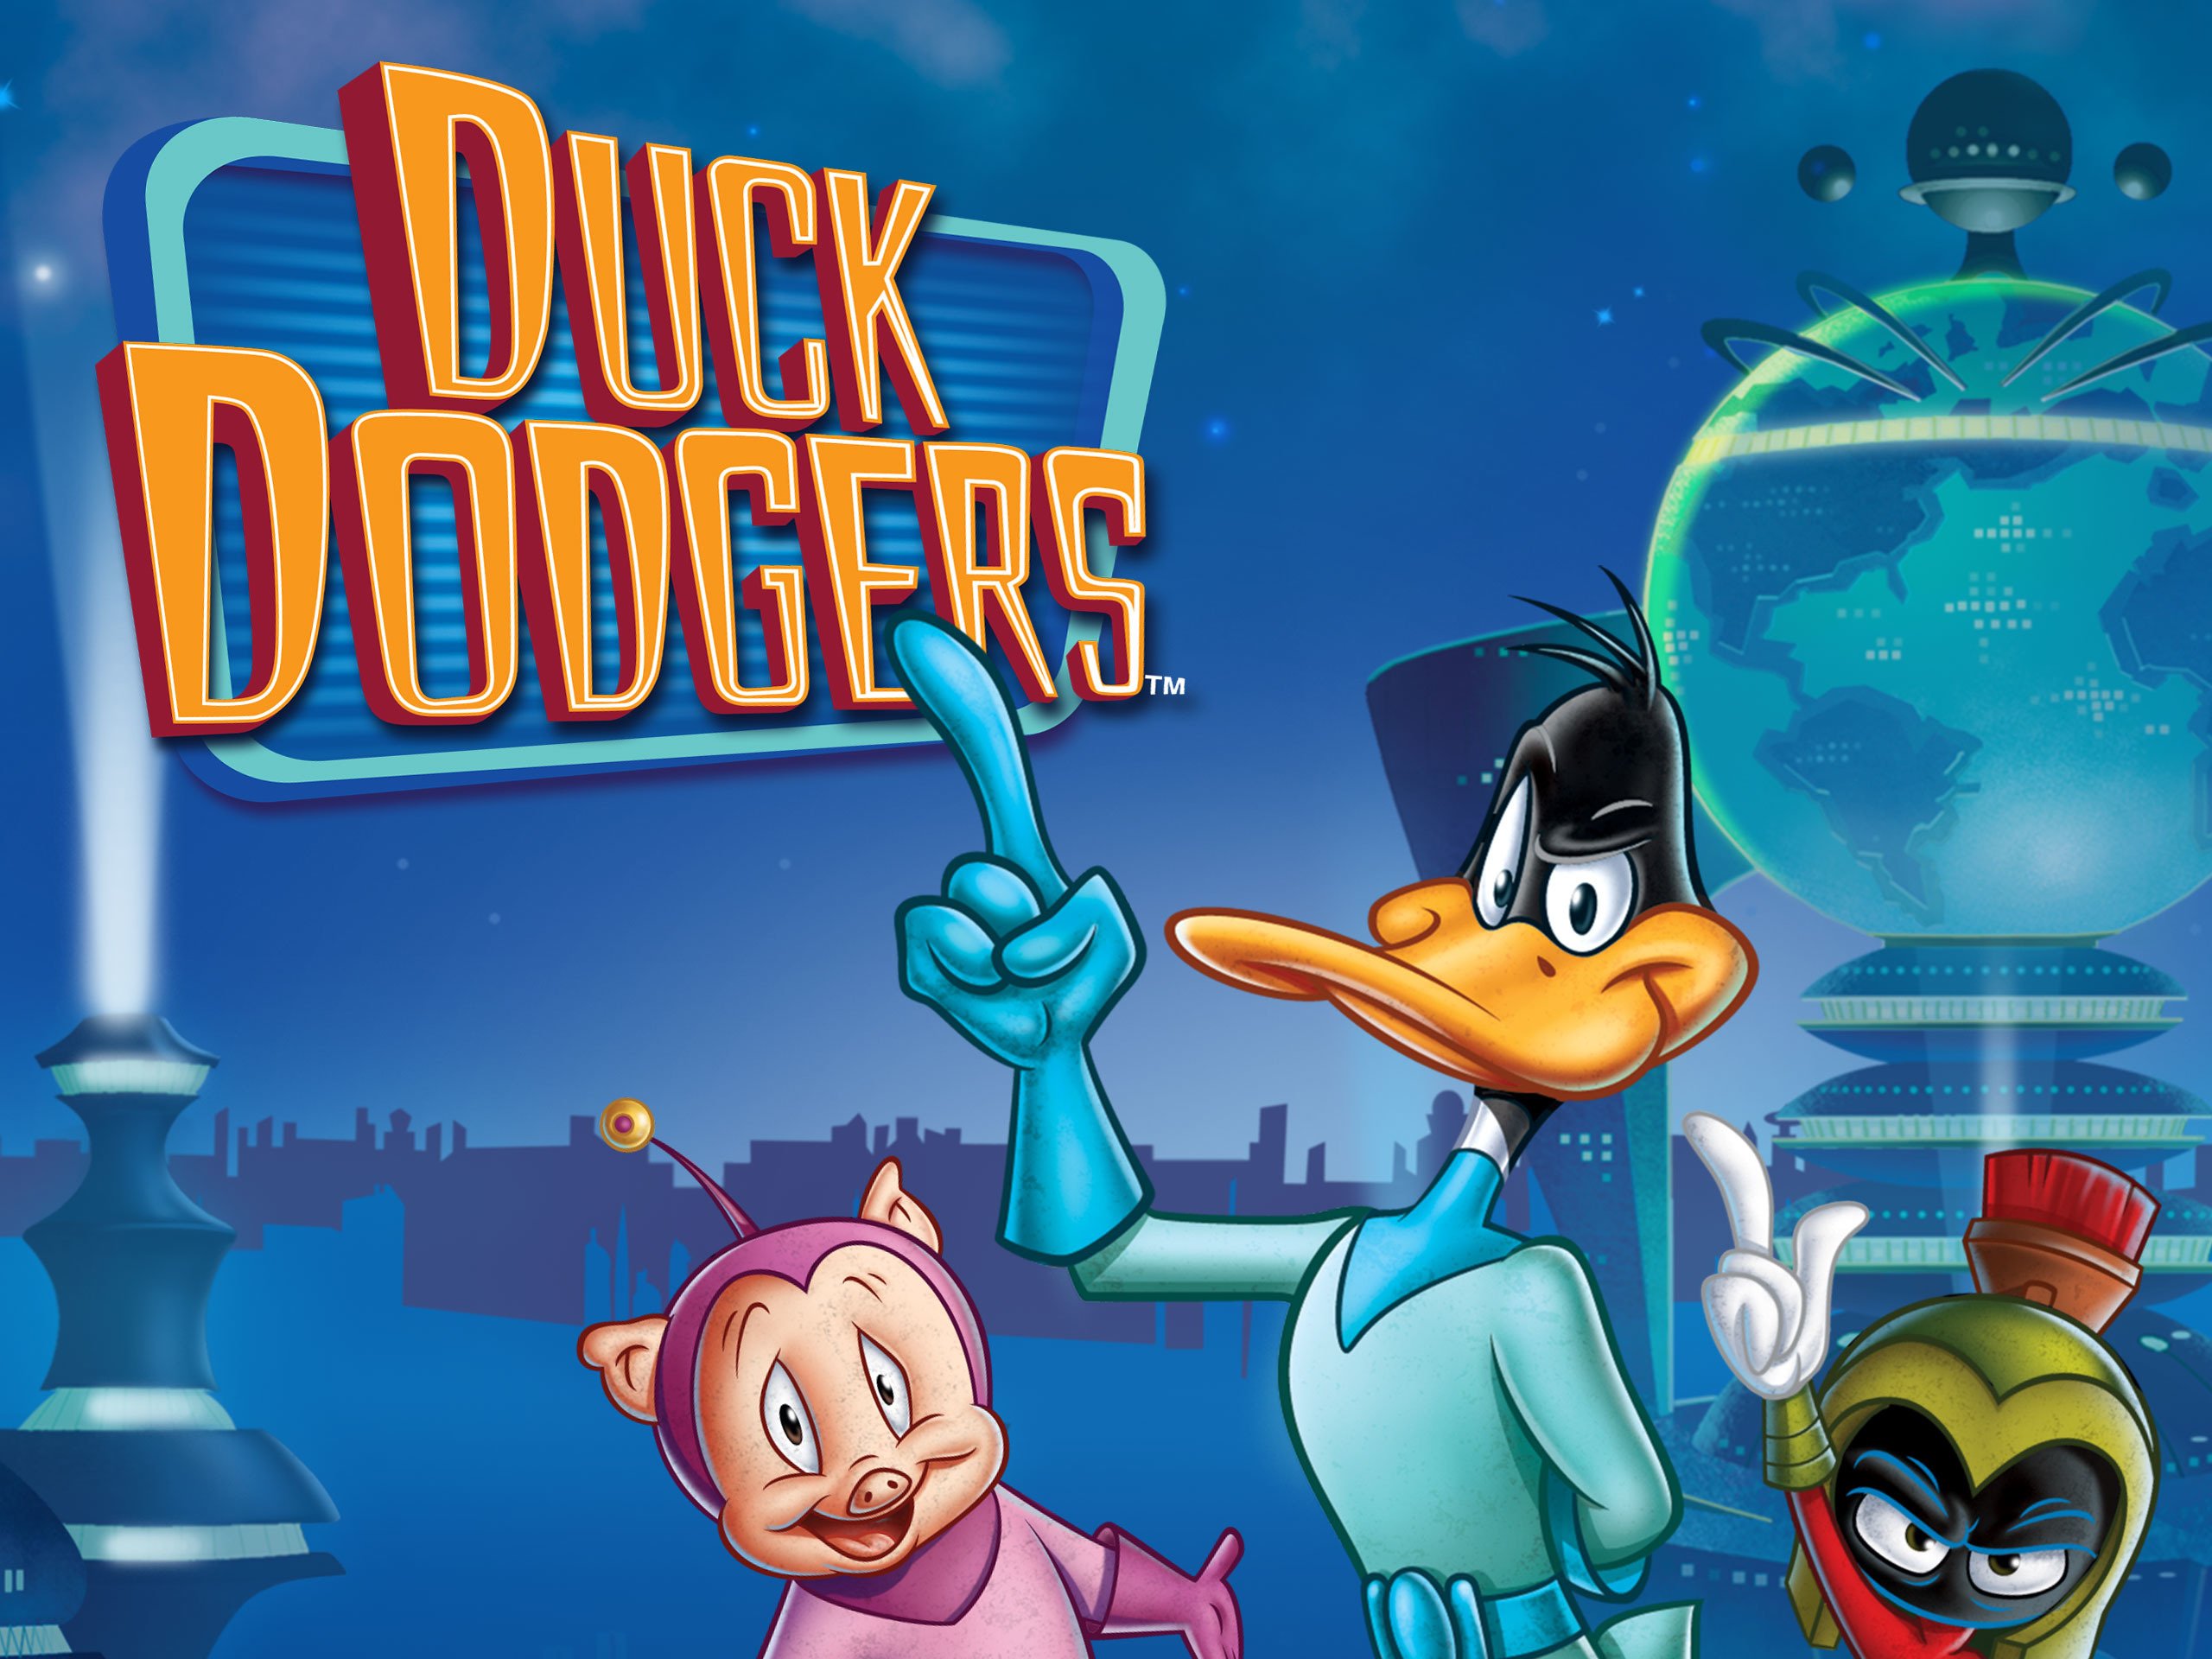 Duck dodgers season 2 episode 11